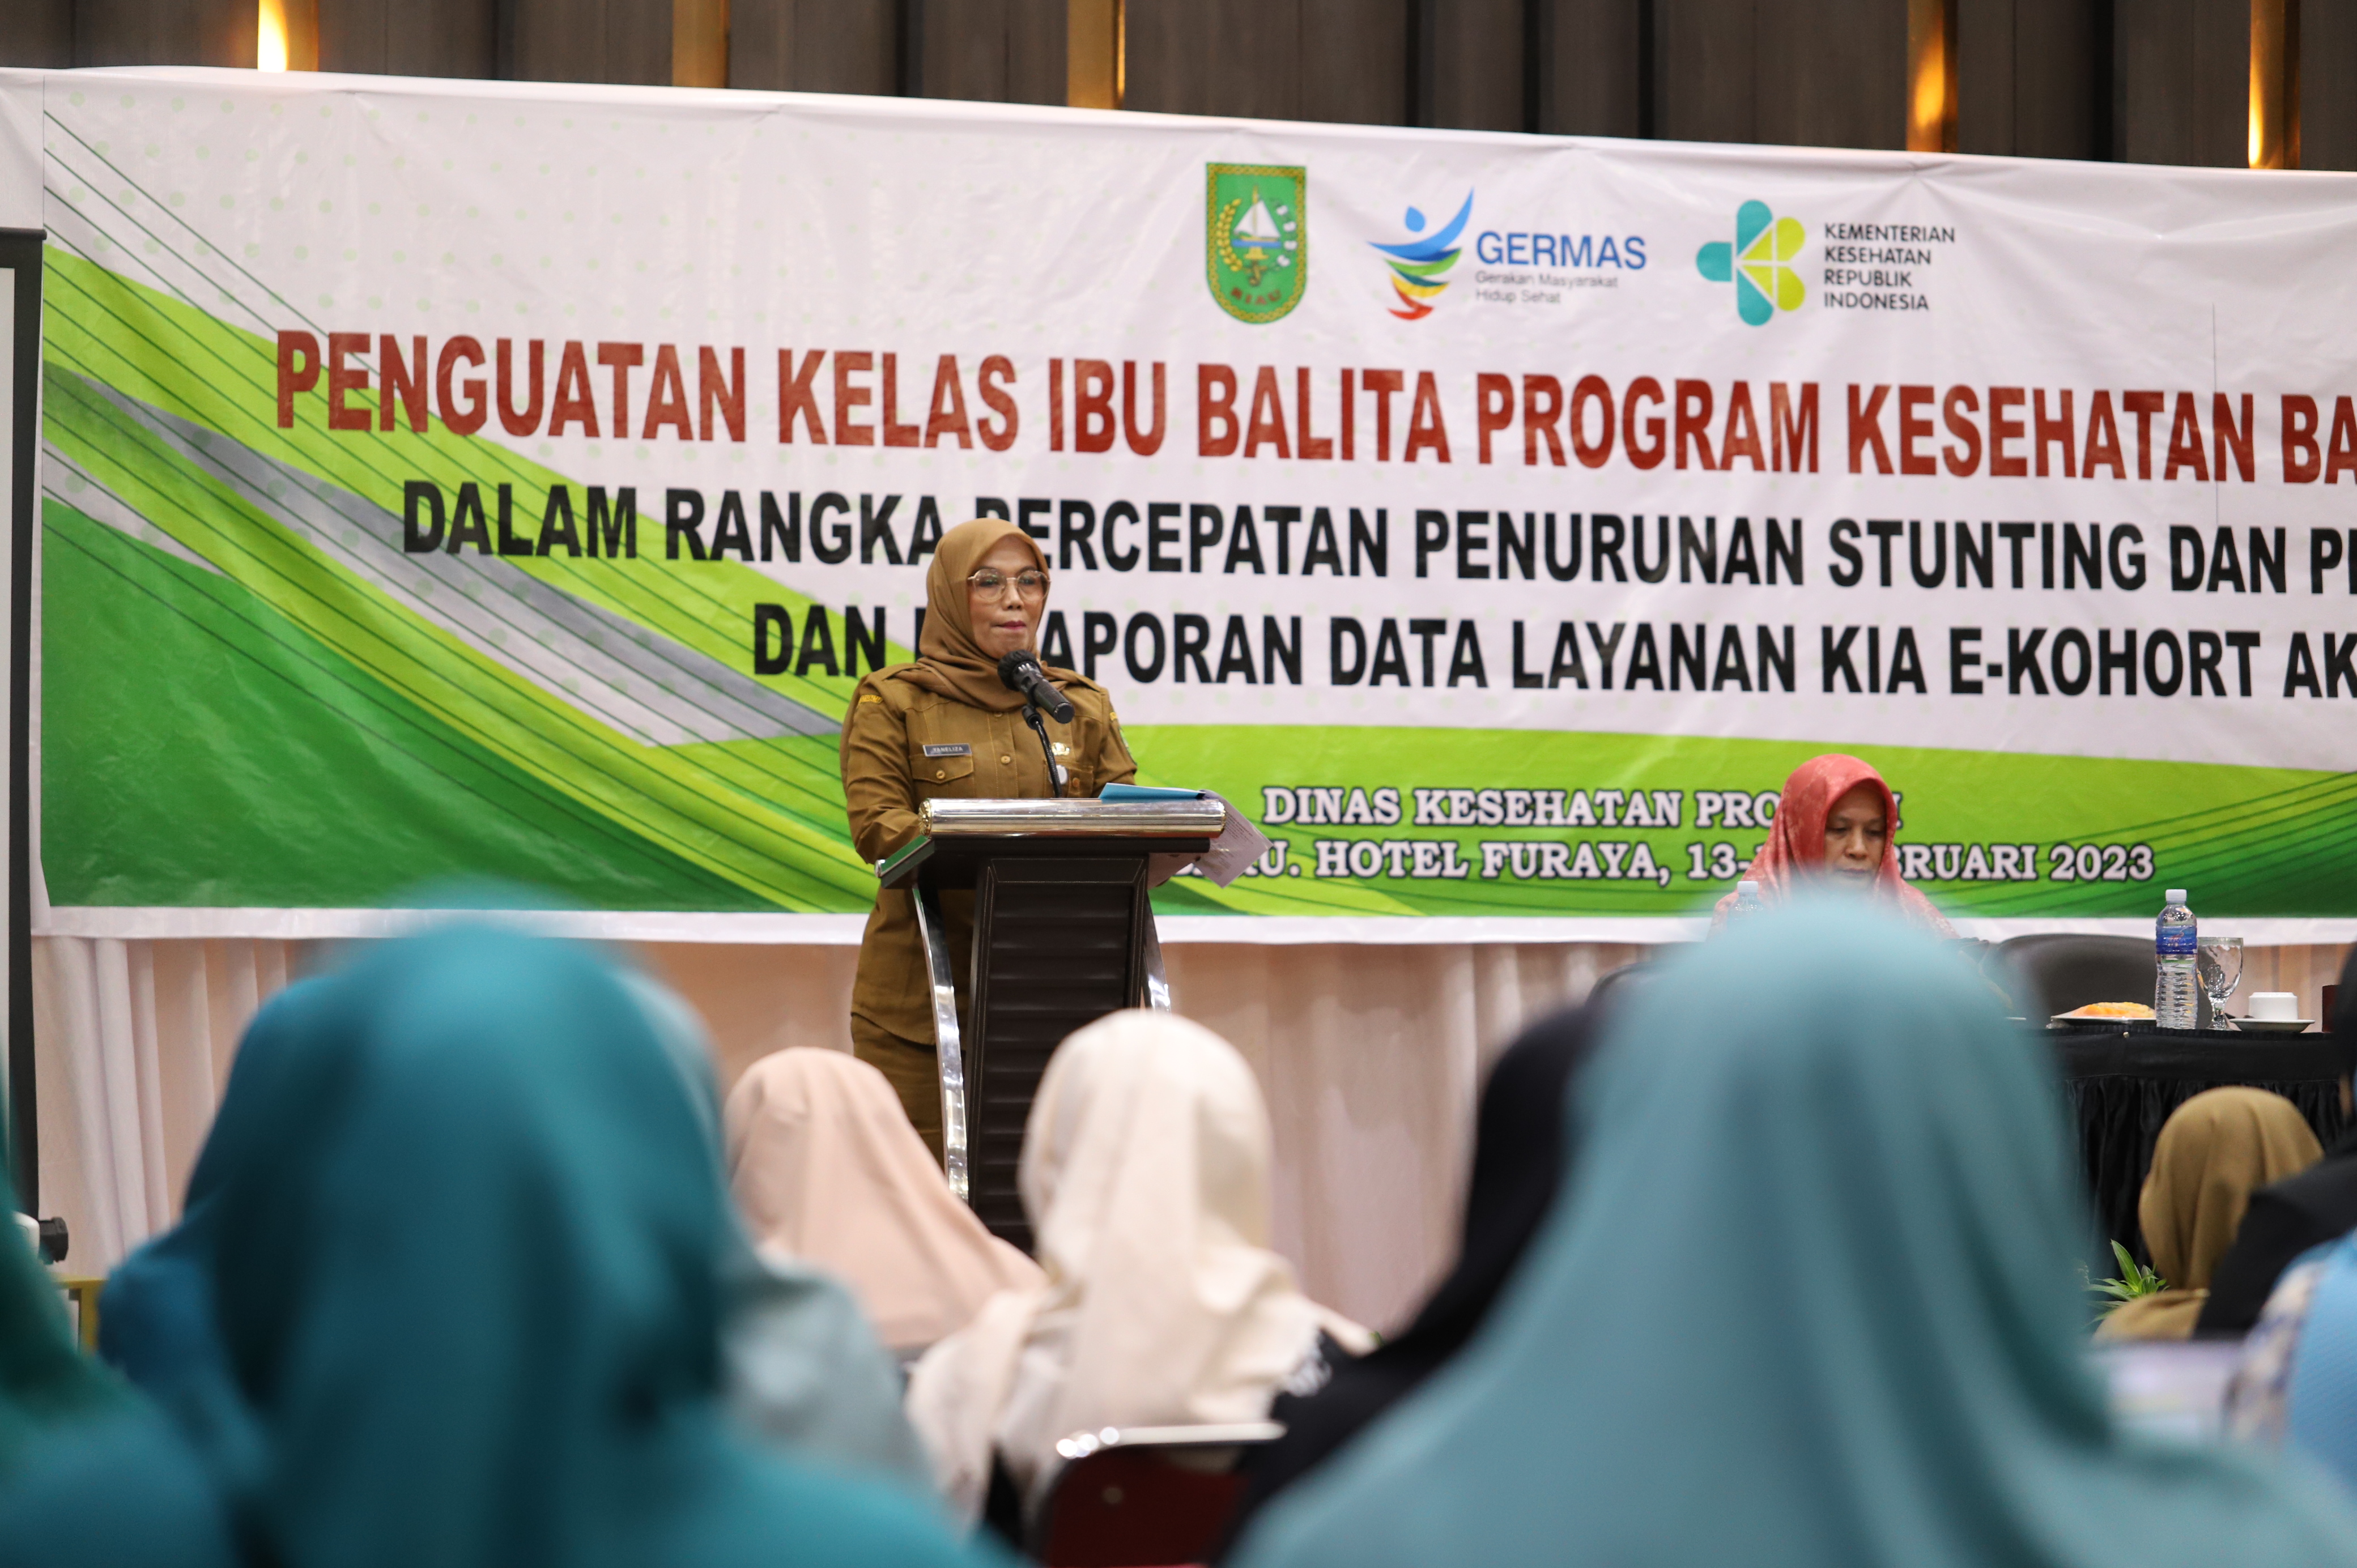 Pertemuan Penguatan Kelas Ibu Balita Dan Pencatatan Pelaporan Data Layanan Kia Di E-Kohort Provinsi Riau Tahun 2023